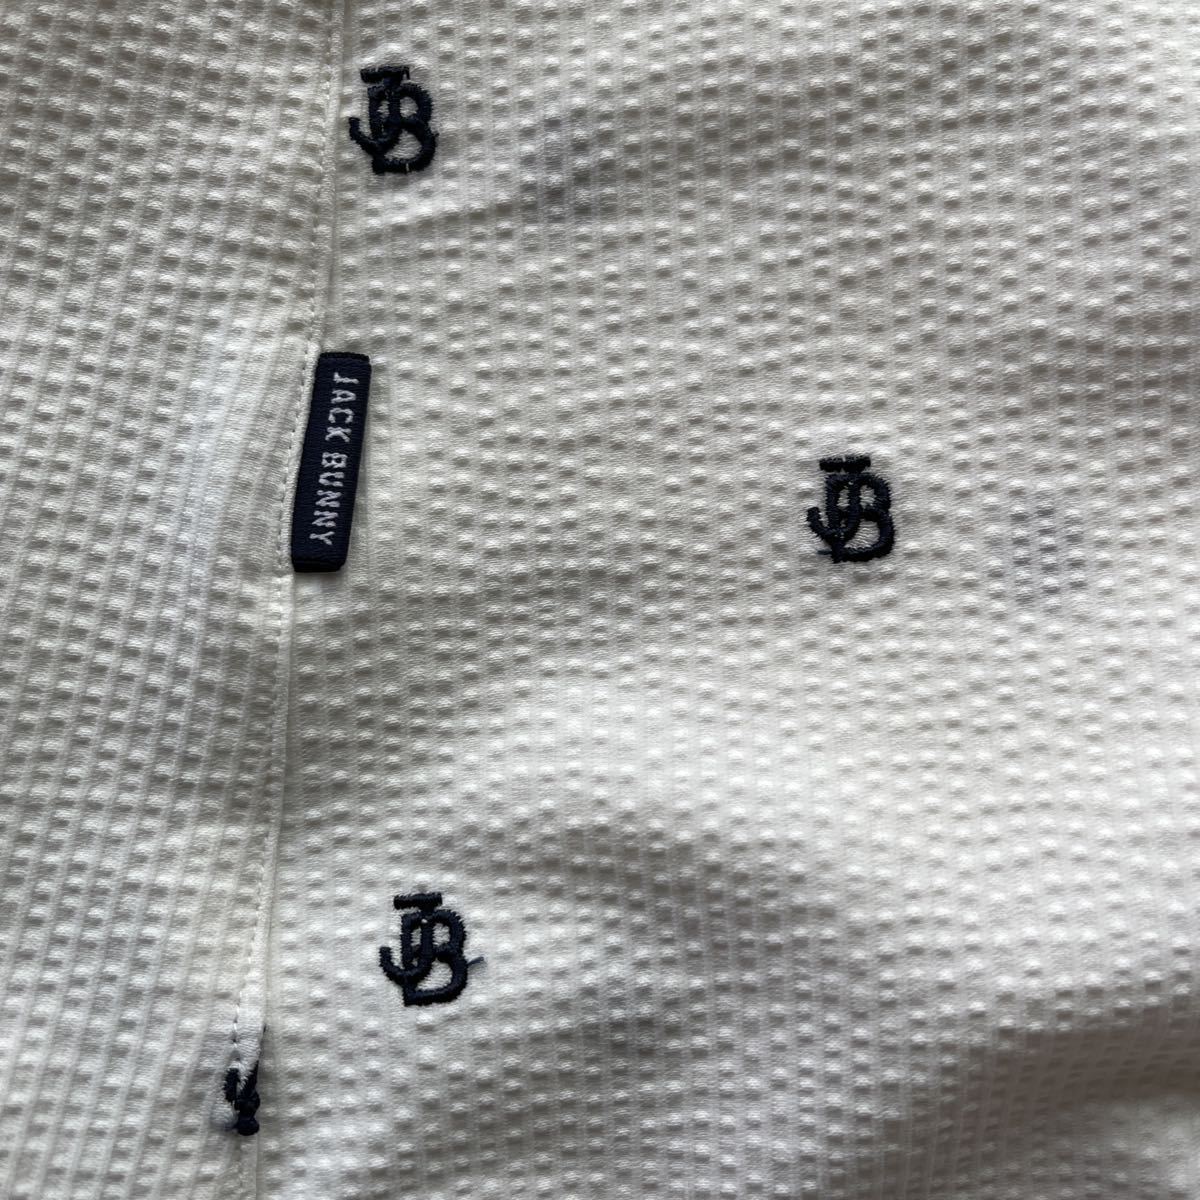  бесплатная доставка Jack ba колено by Pearly Gates JB точка рисунок юбка футбол ткань высокое напряжение STRETCH. вода скорость ... уменьшение ventilation( сильно сниженная цена 2) новый товар 